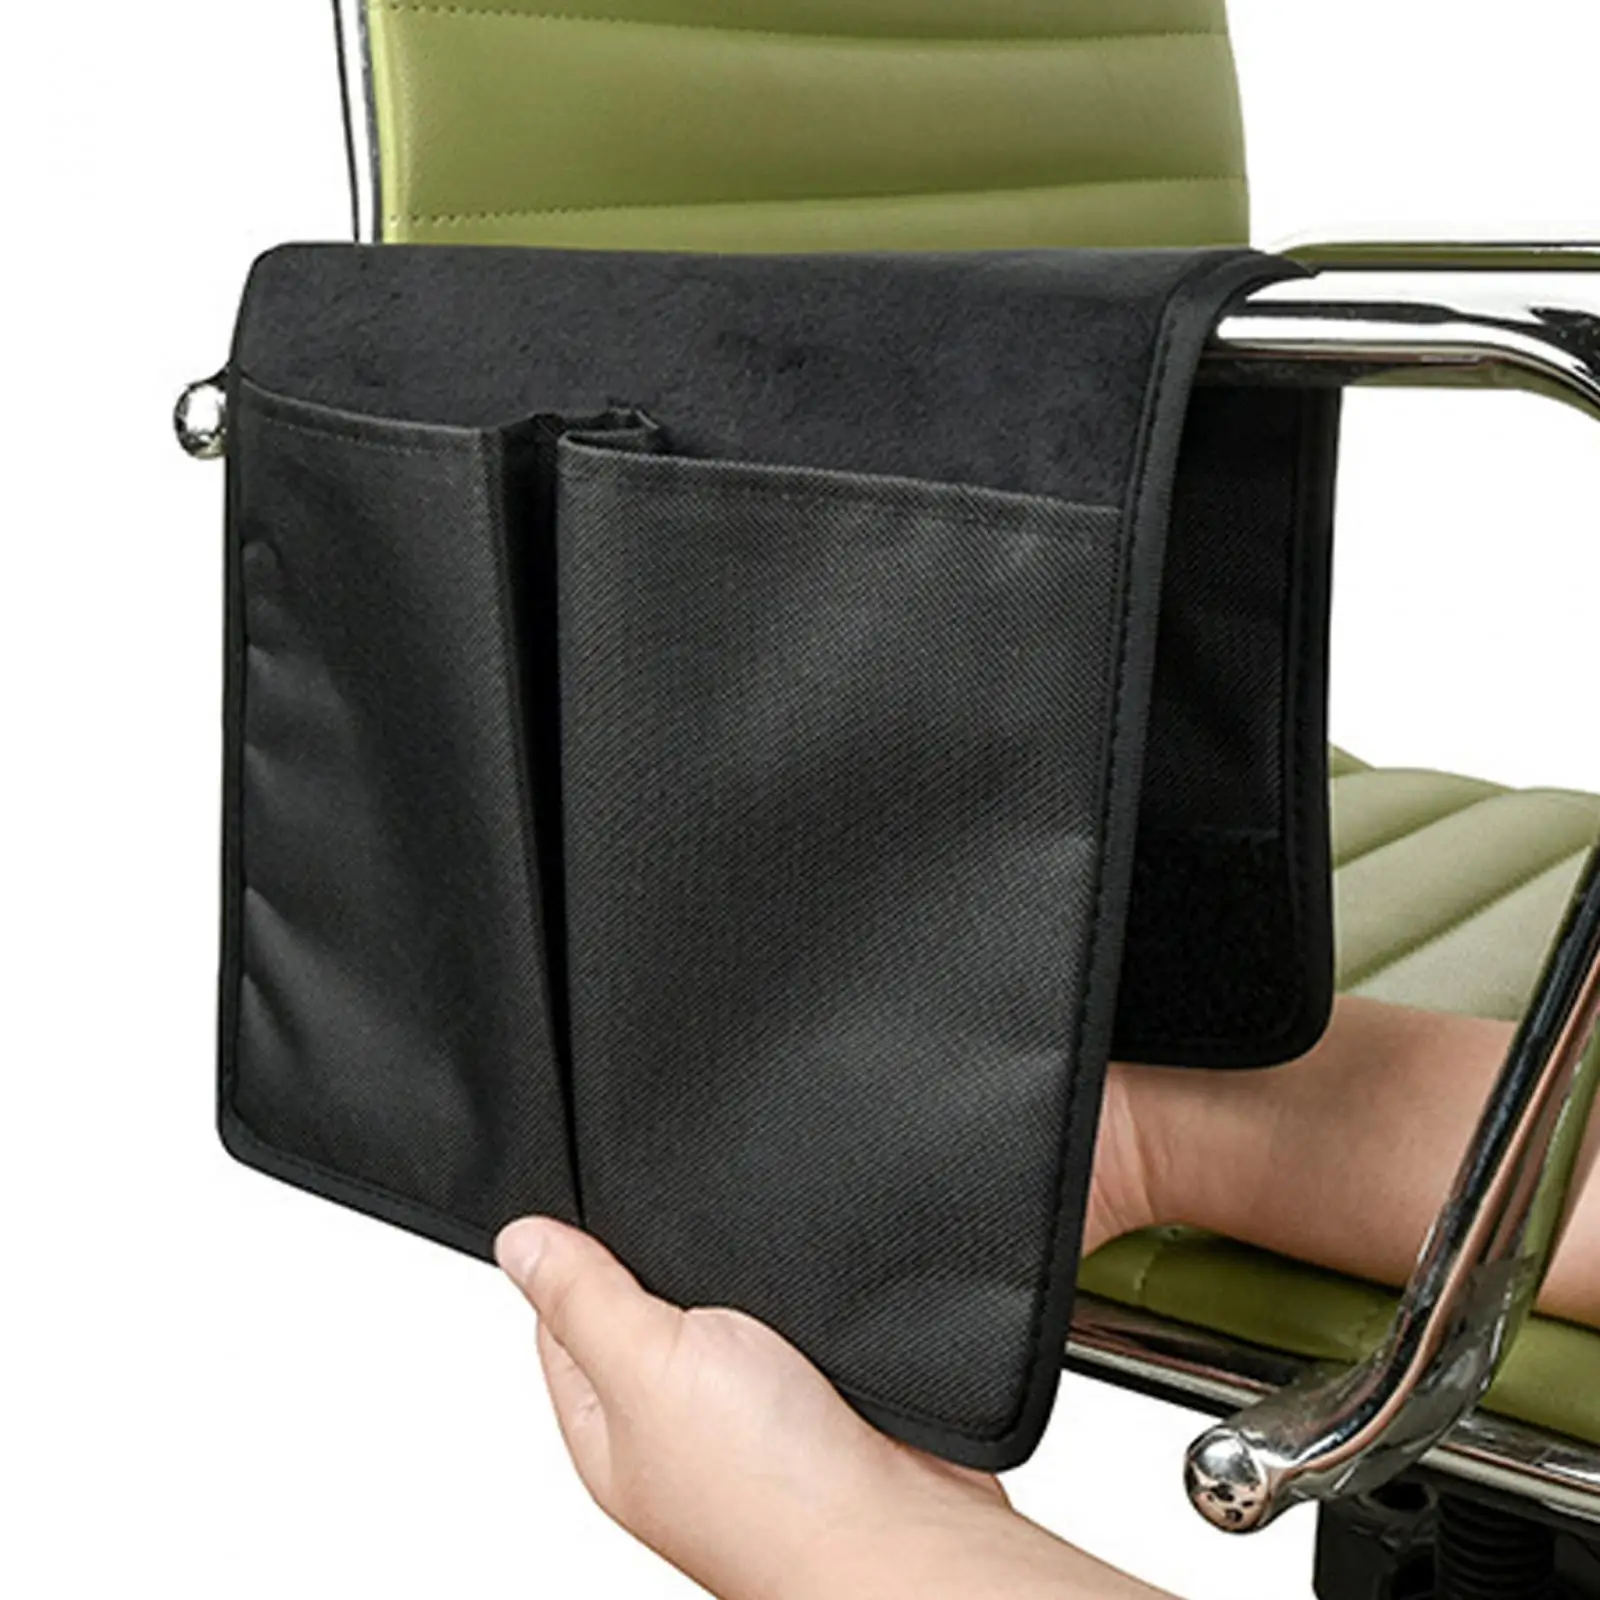 Chair Side Storage Organizer Bedside Storage Bag Phone Holder Bag Multi Pockets Chair Side Bag for Glasses Phone Remotes Black